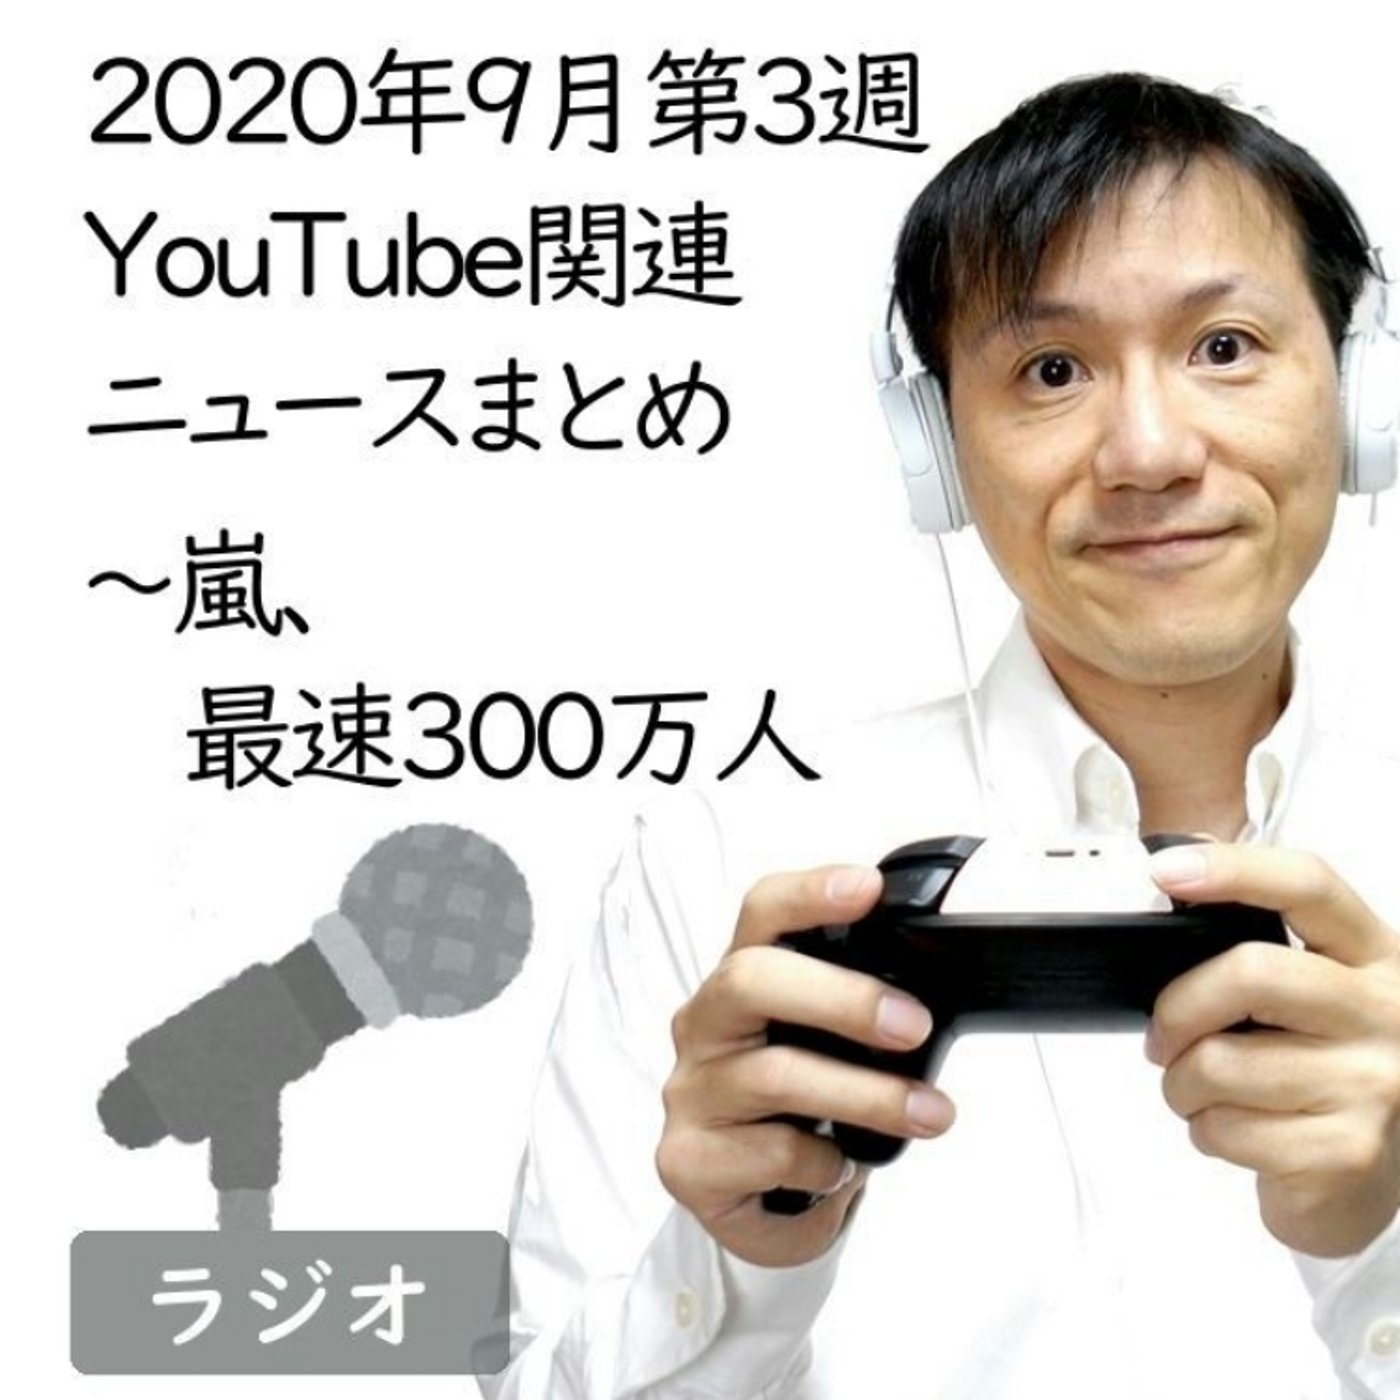 【#203】2020年9月第3週YouTube関連ニュースまとめ～嵐最速300万